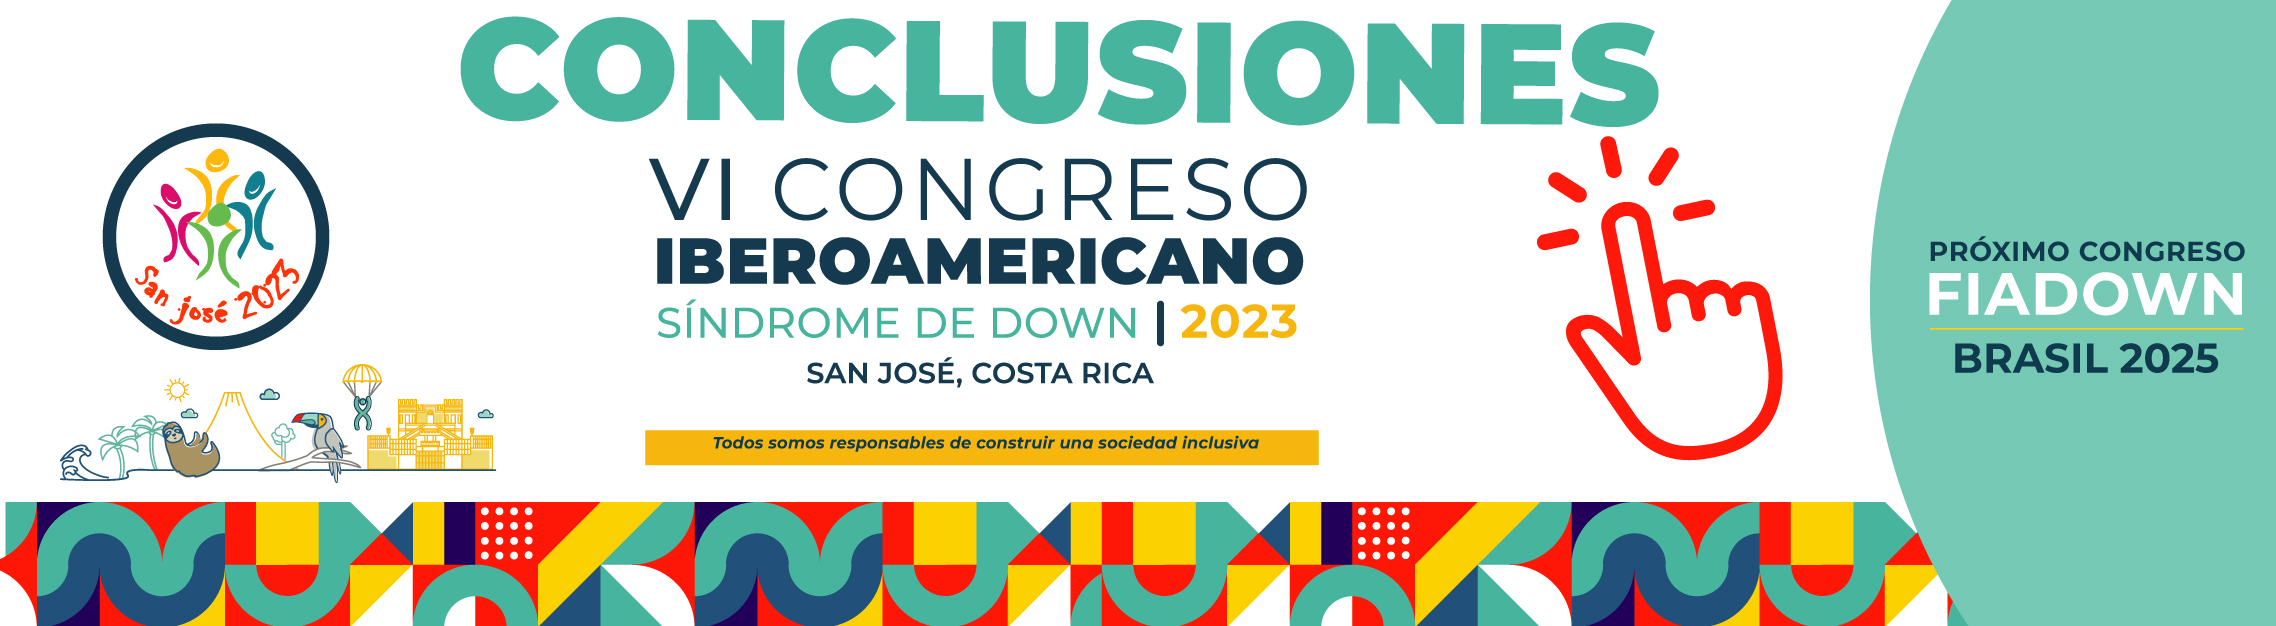 Banner conclusiones VI Congreso Iberoamericano de Síndrome de Down